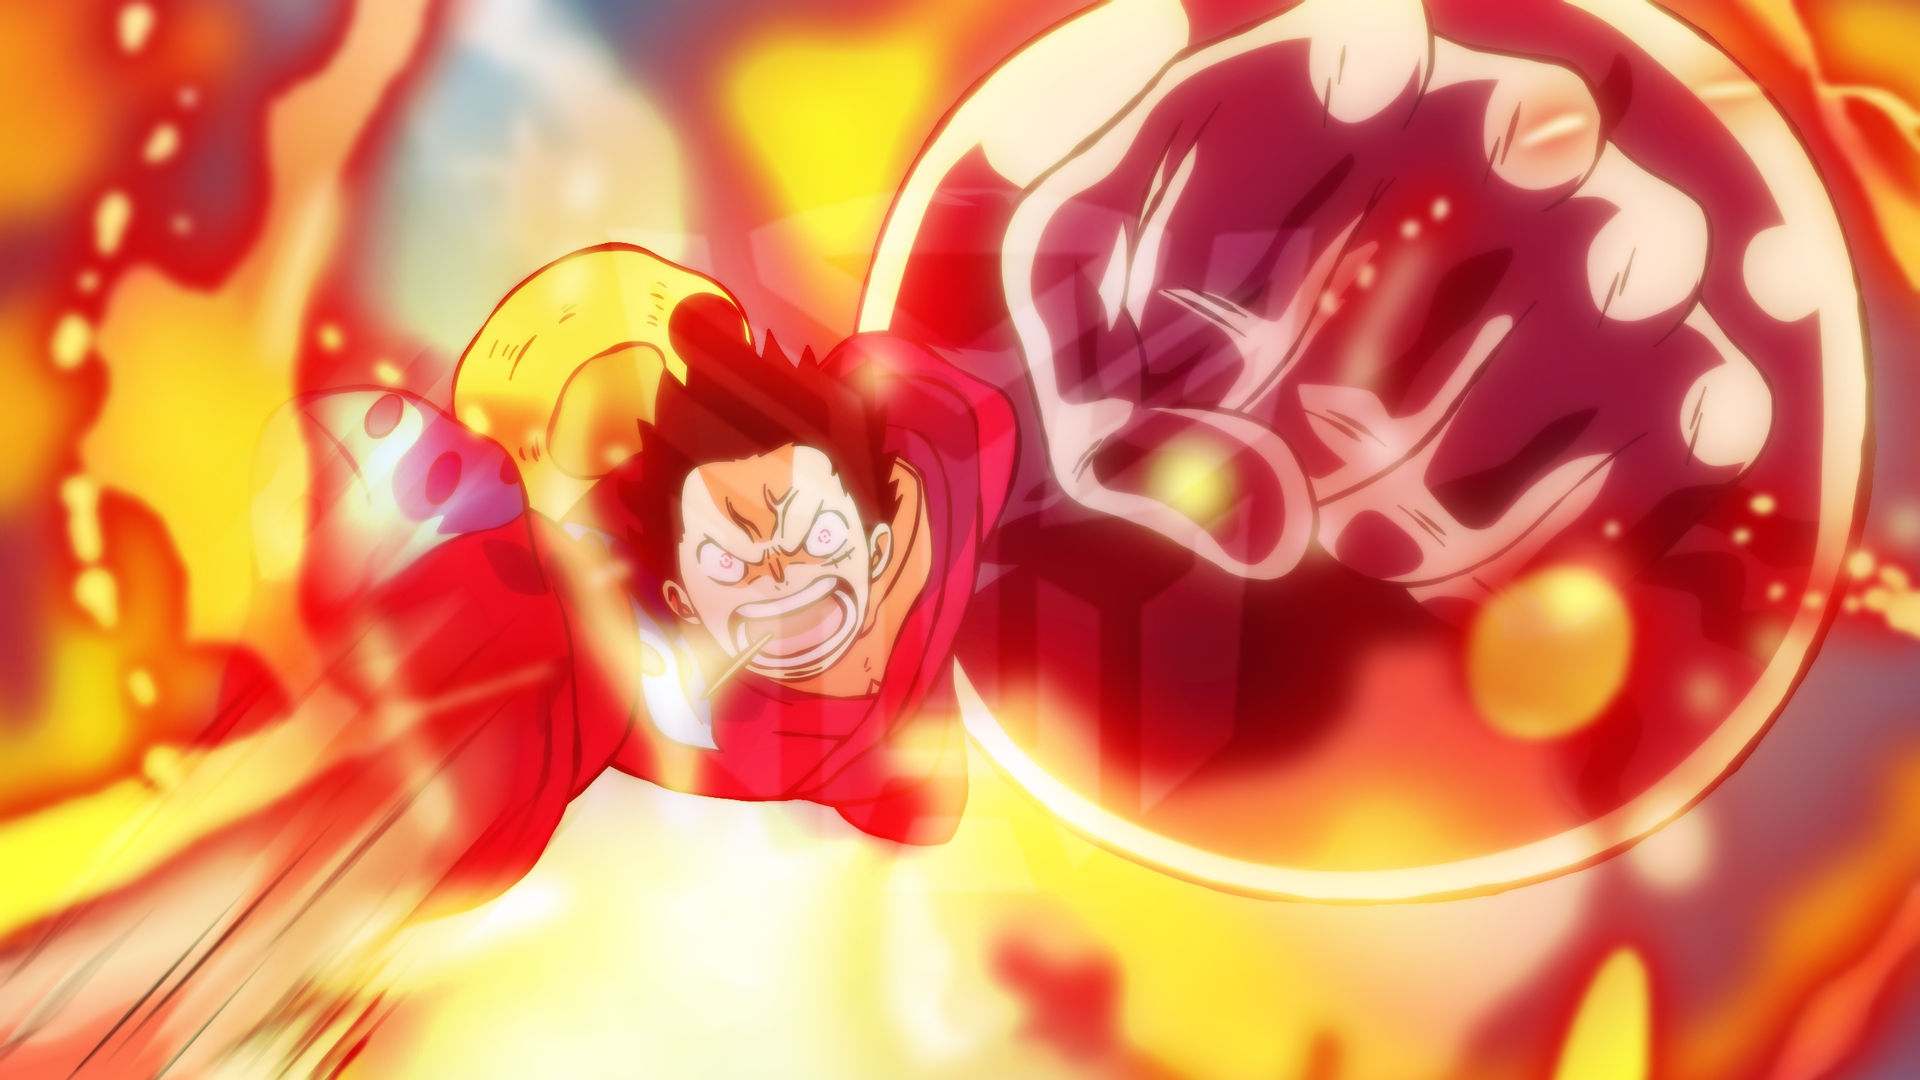 Gear 3 của Luffy là một trong những đòn tấn công mạnh nhất của anh ta trong One Piece. Nó đưa sức mạnh của Luffy lên mức độ khác biệt hoàn toàn, tạo ra những pha hành động hấp dẫn và kịch tính. Thưởng thức hình ảnh Gear 3 trên Google và cảm nhận sự uy nghi của nó!